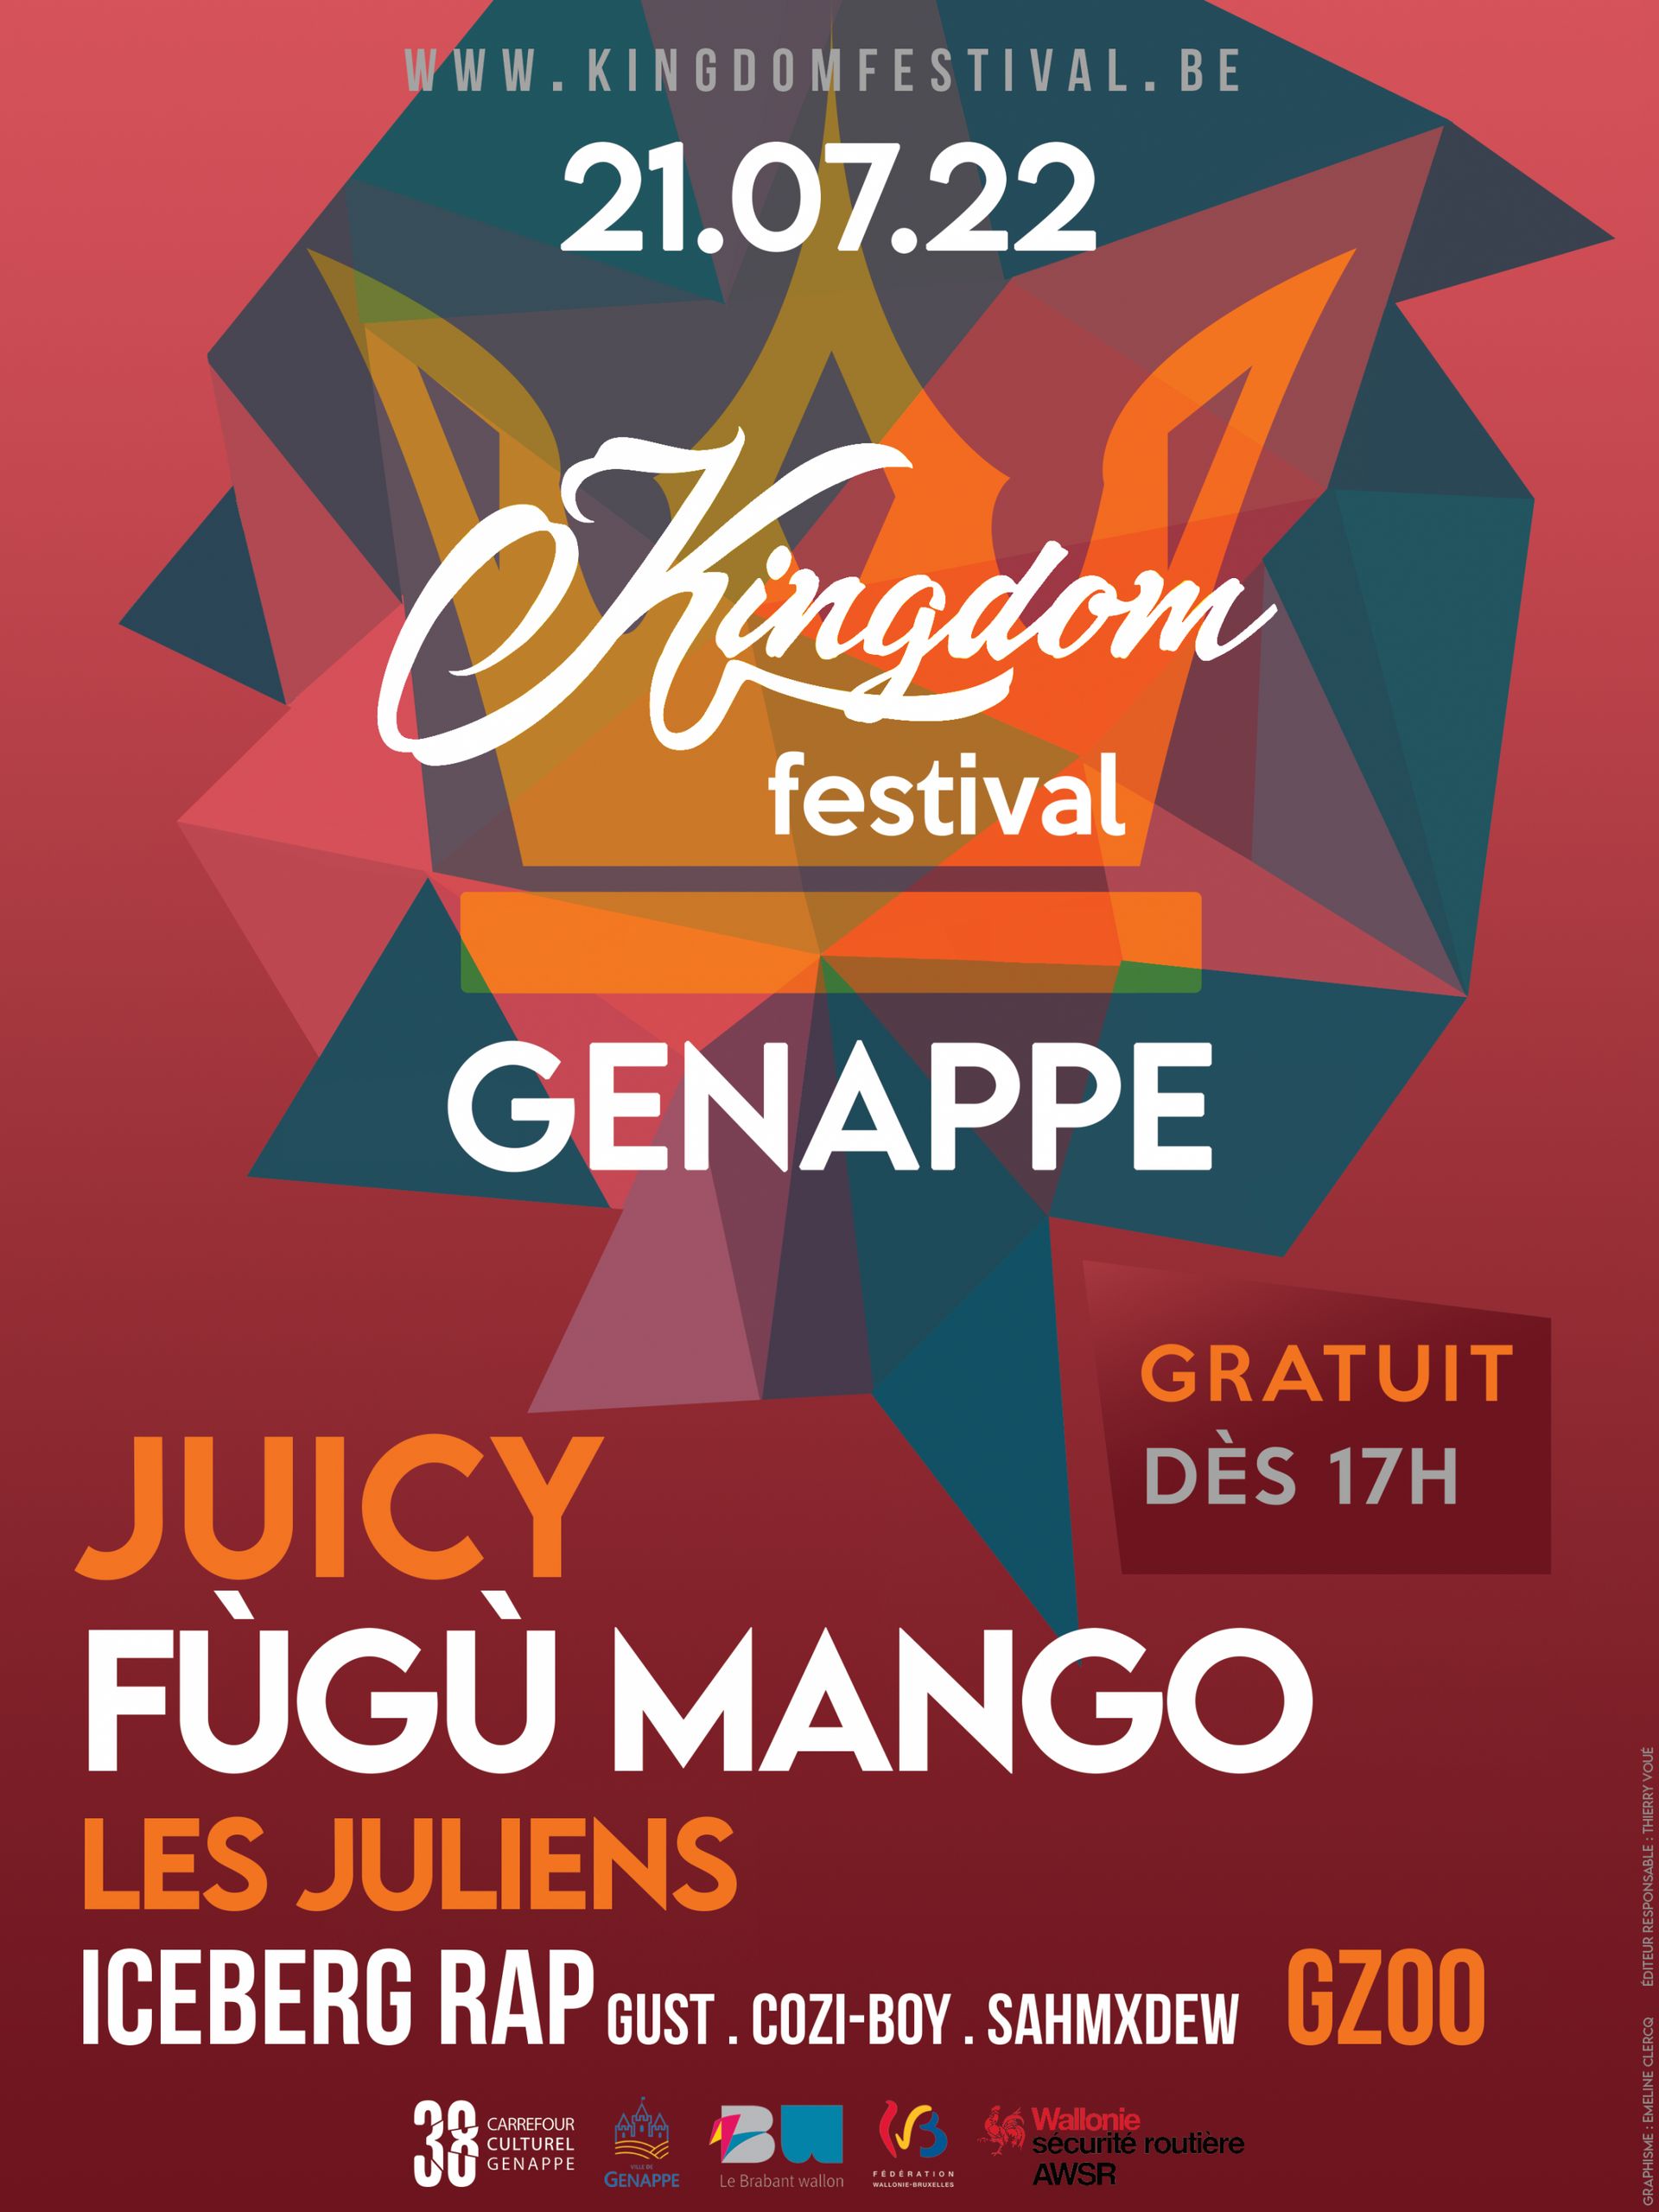 Le KINGDOM festival de Geneppe revient le 21 juillet.